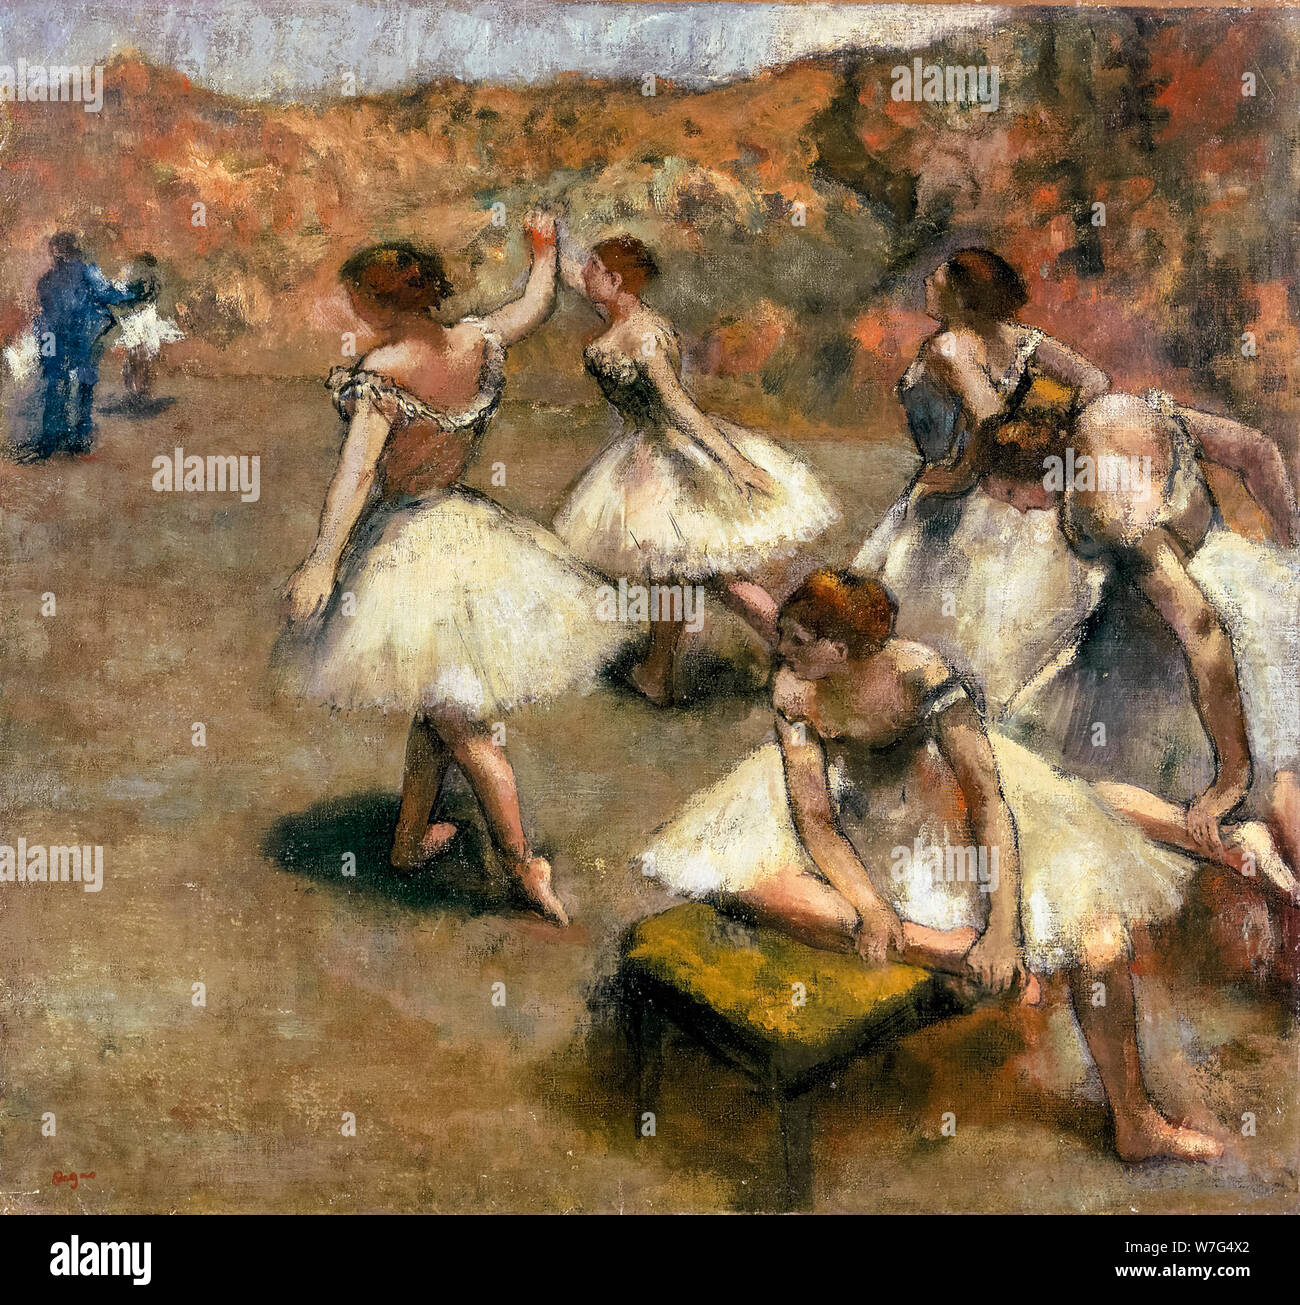 Edgar Degas, danseurs sur scène, peinture, vers 1889 Banque D'Images